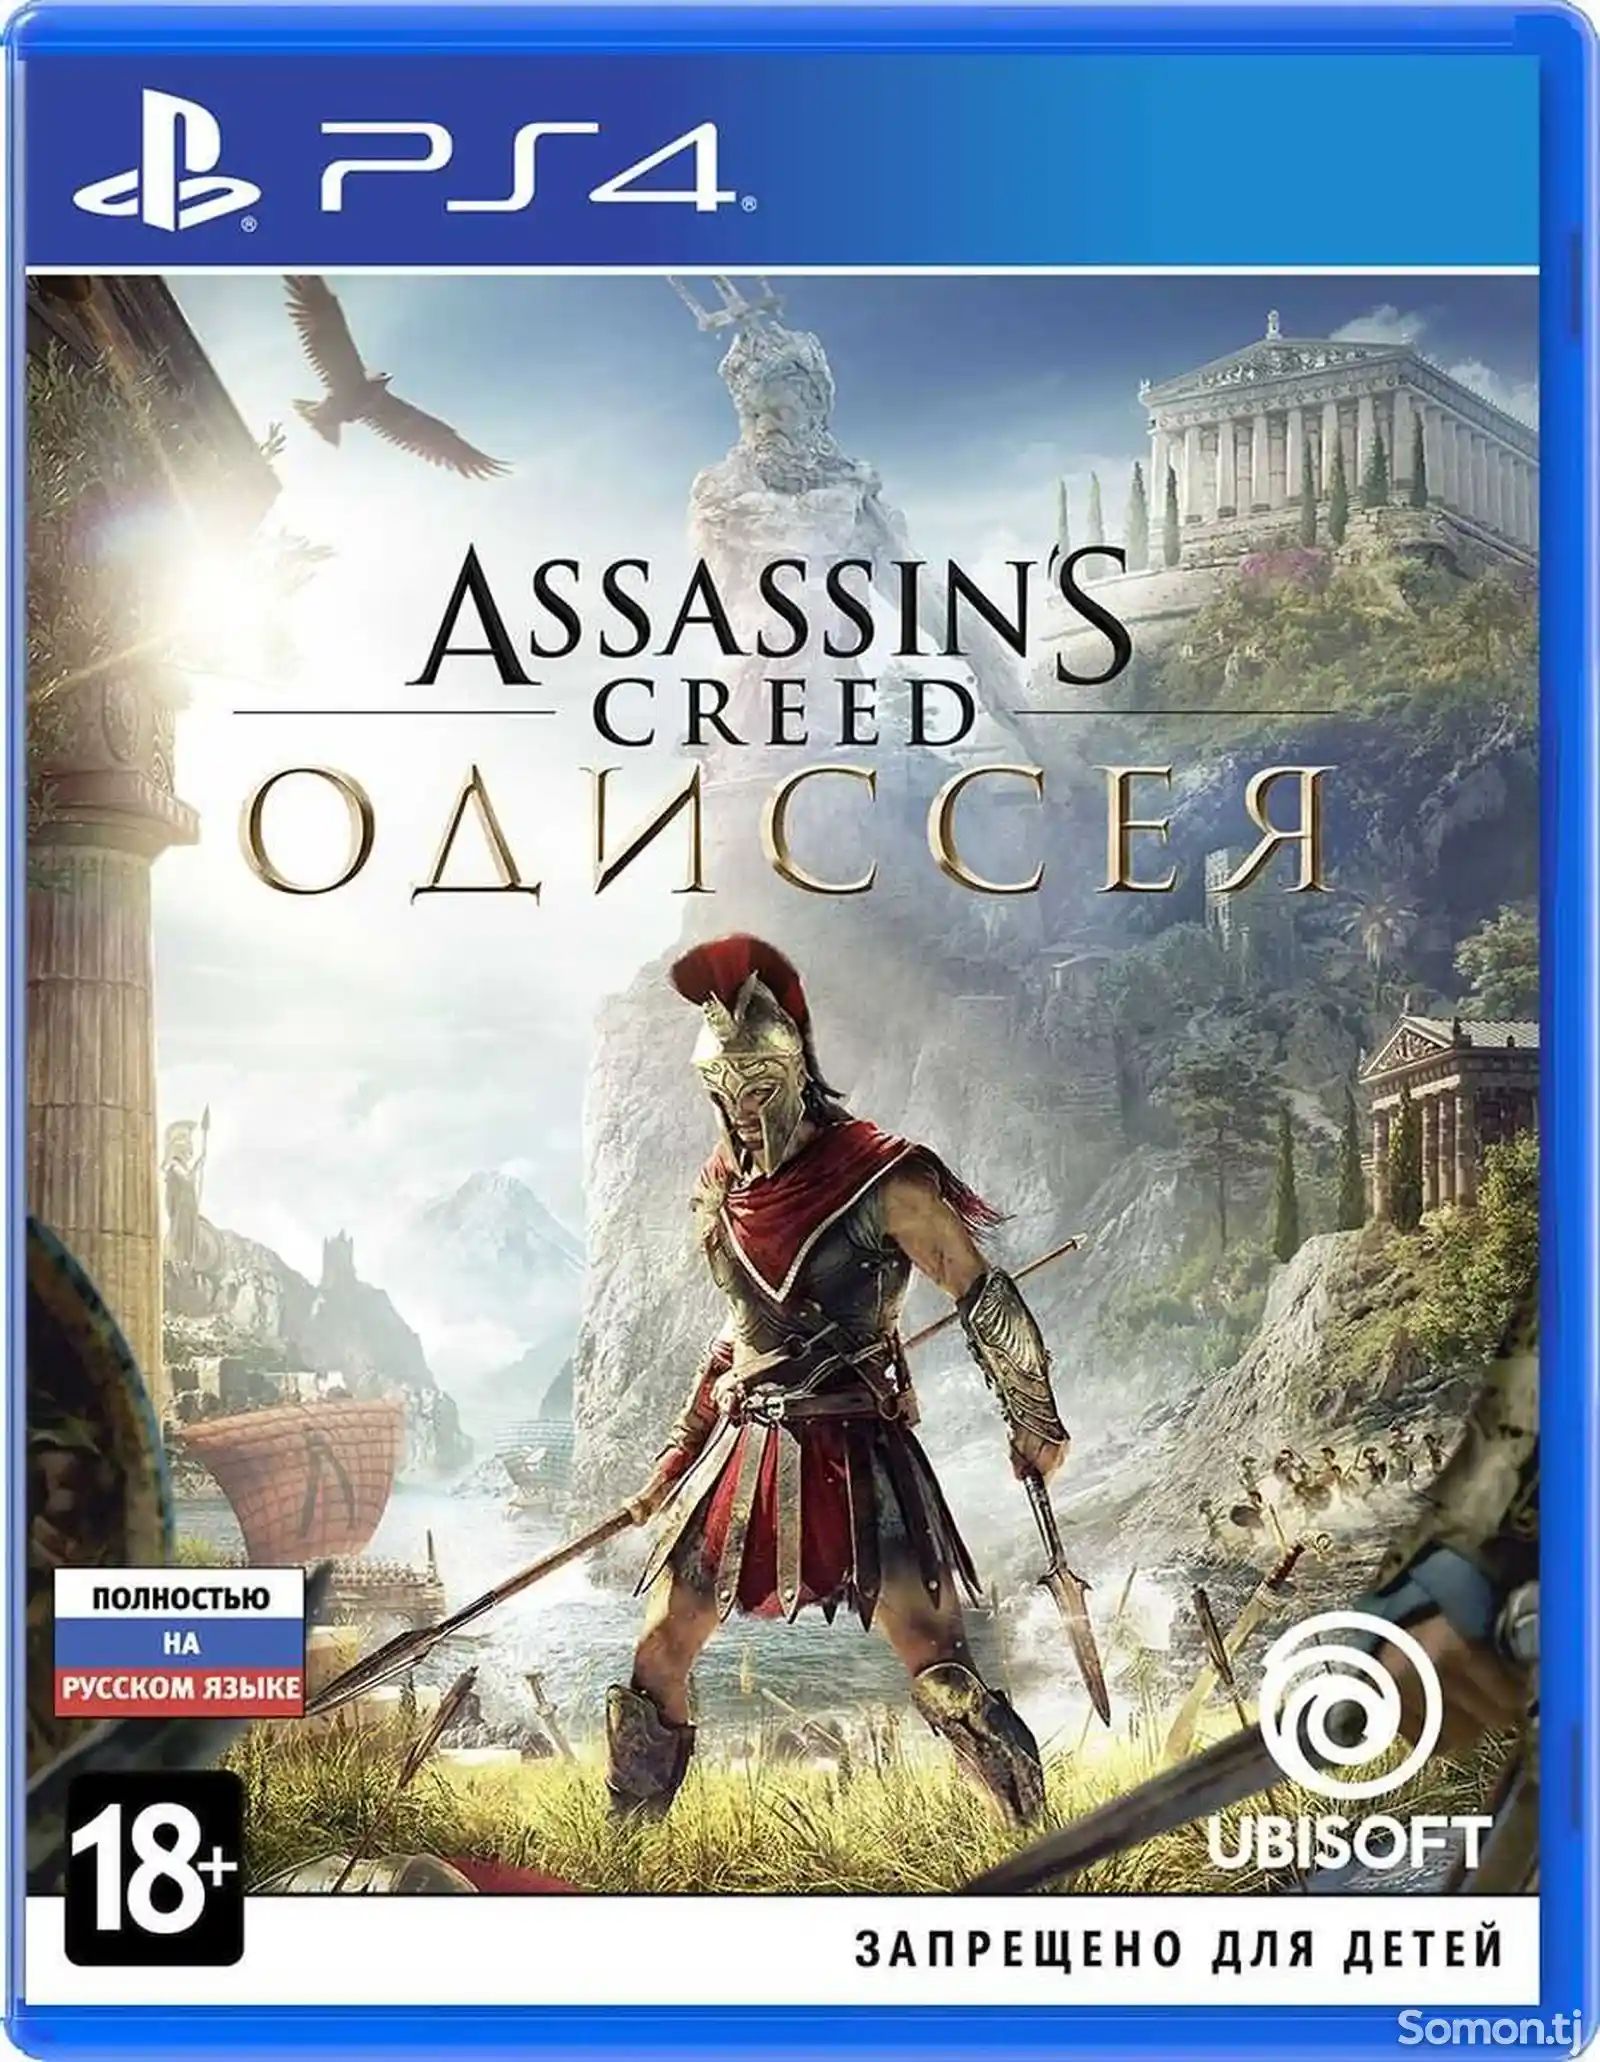 Игра Assassin's Одисcея для PS4